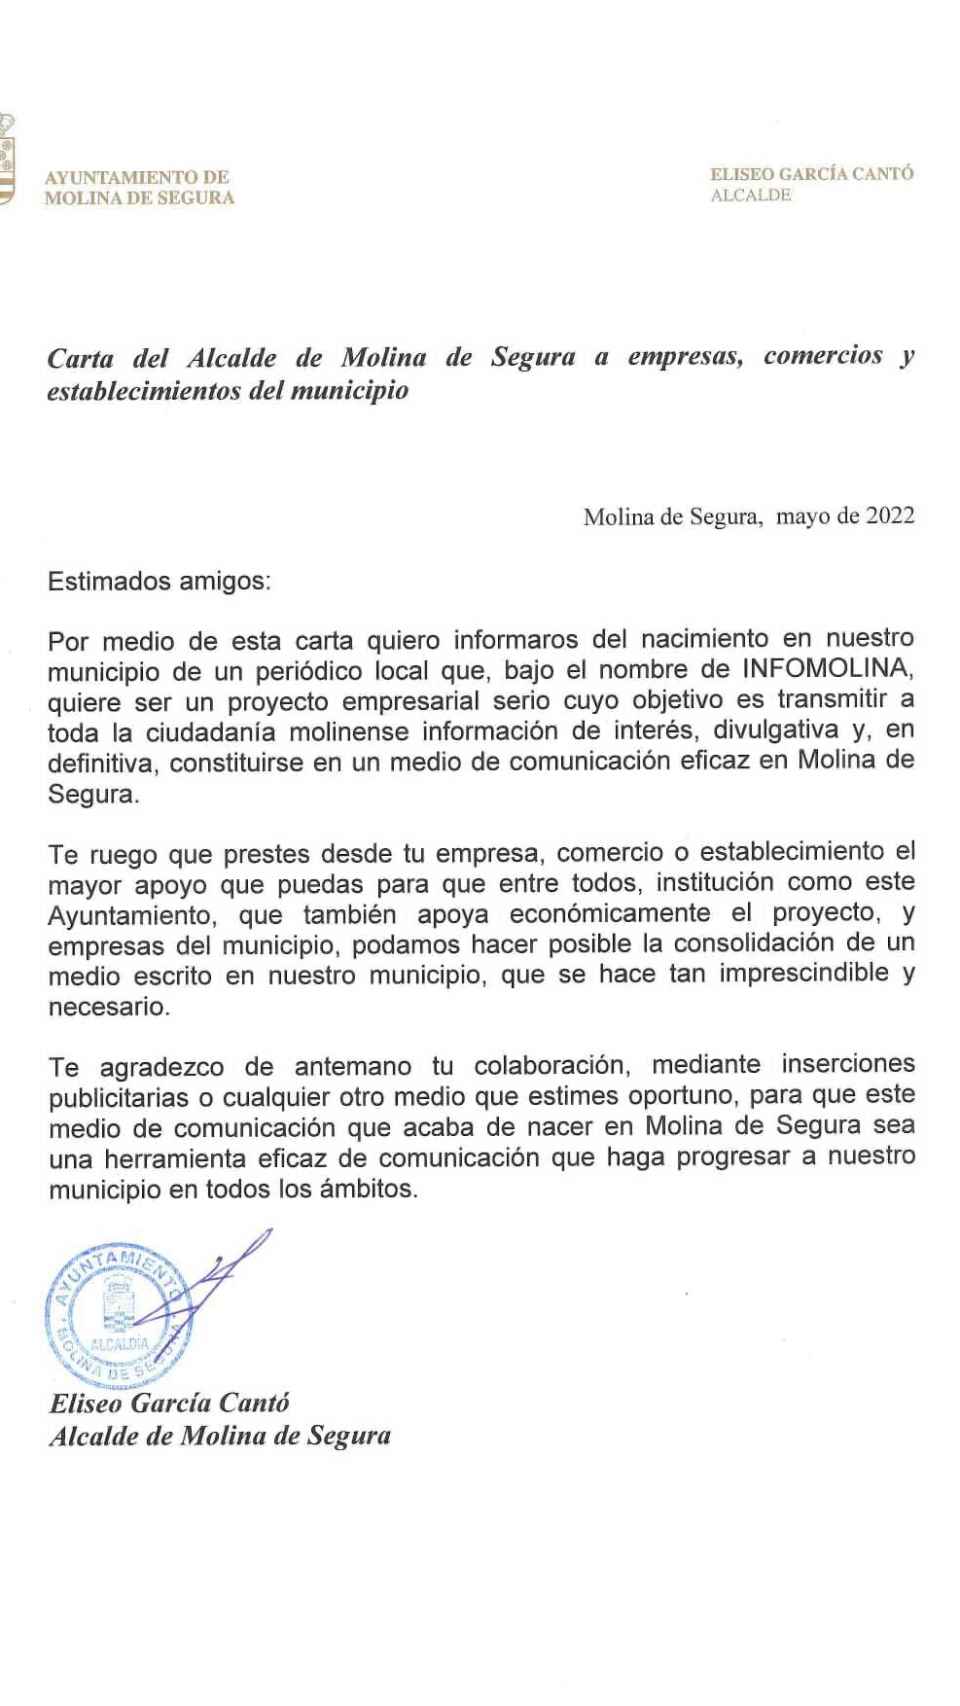 La carta firmada por el regidor molinense donde se dirige a los empresarios de la ciudad.